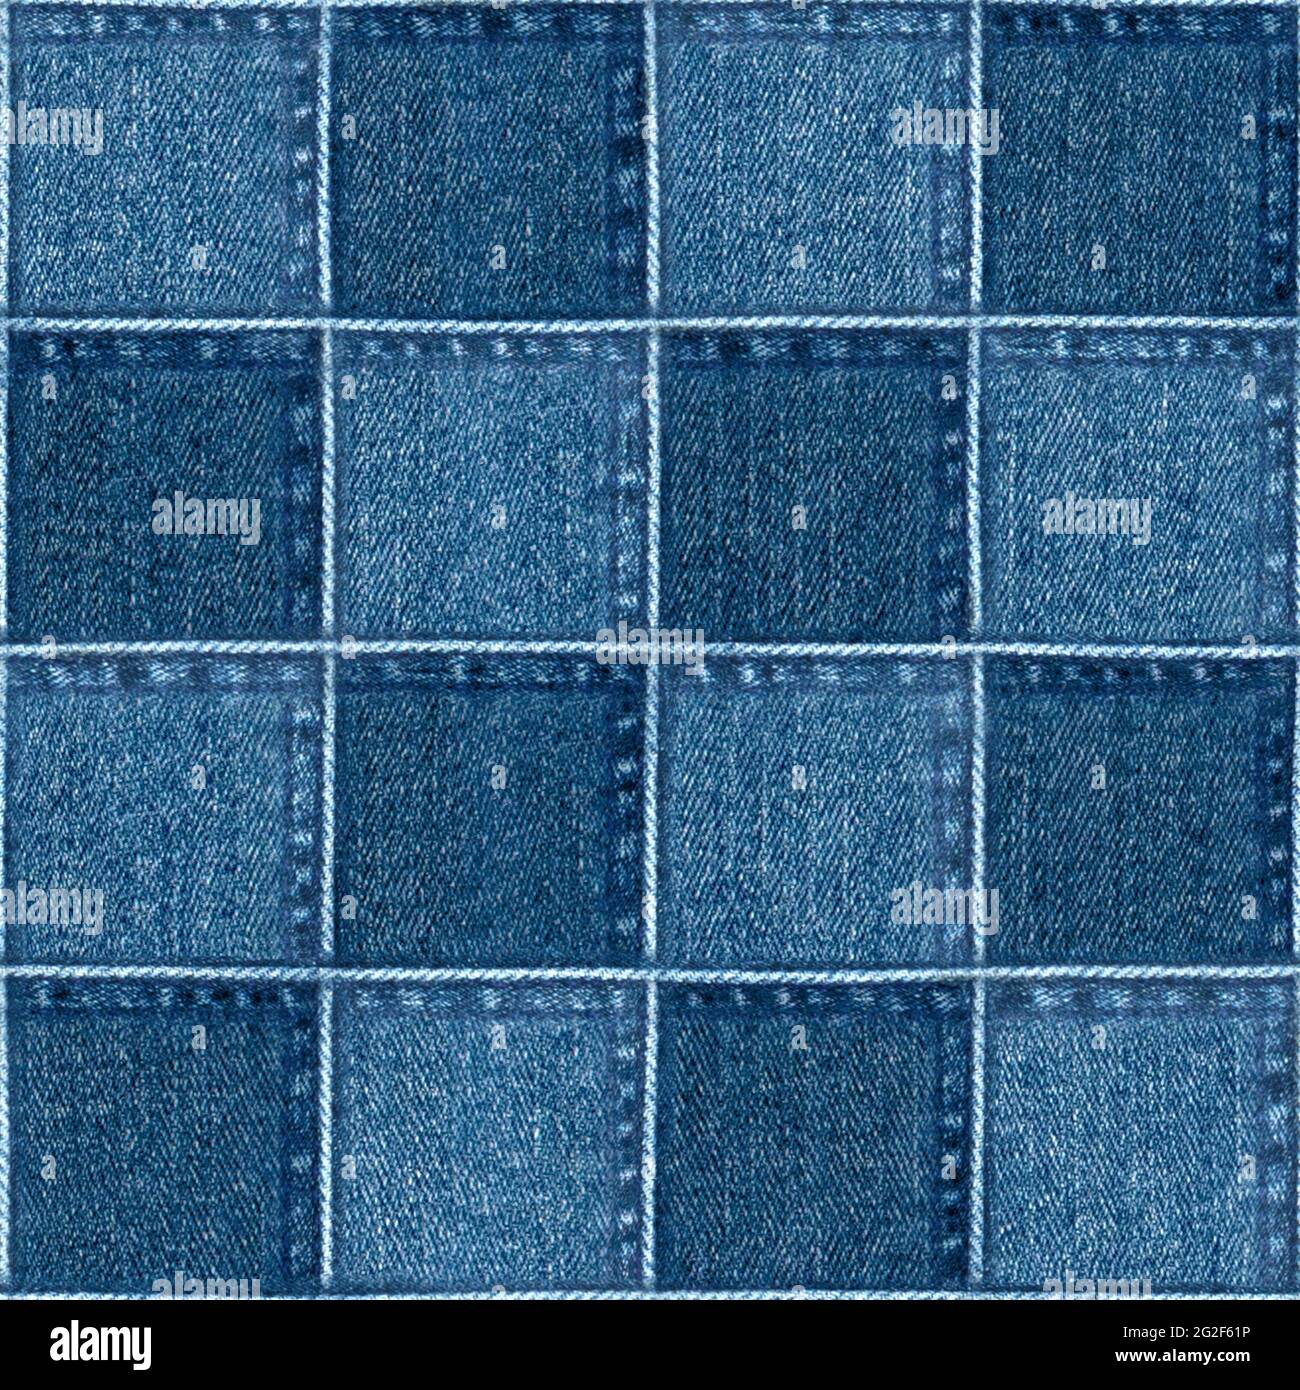 Jeans patchwork blue checkered fashion background. Denim grunge ...